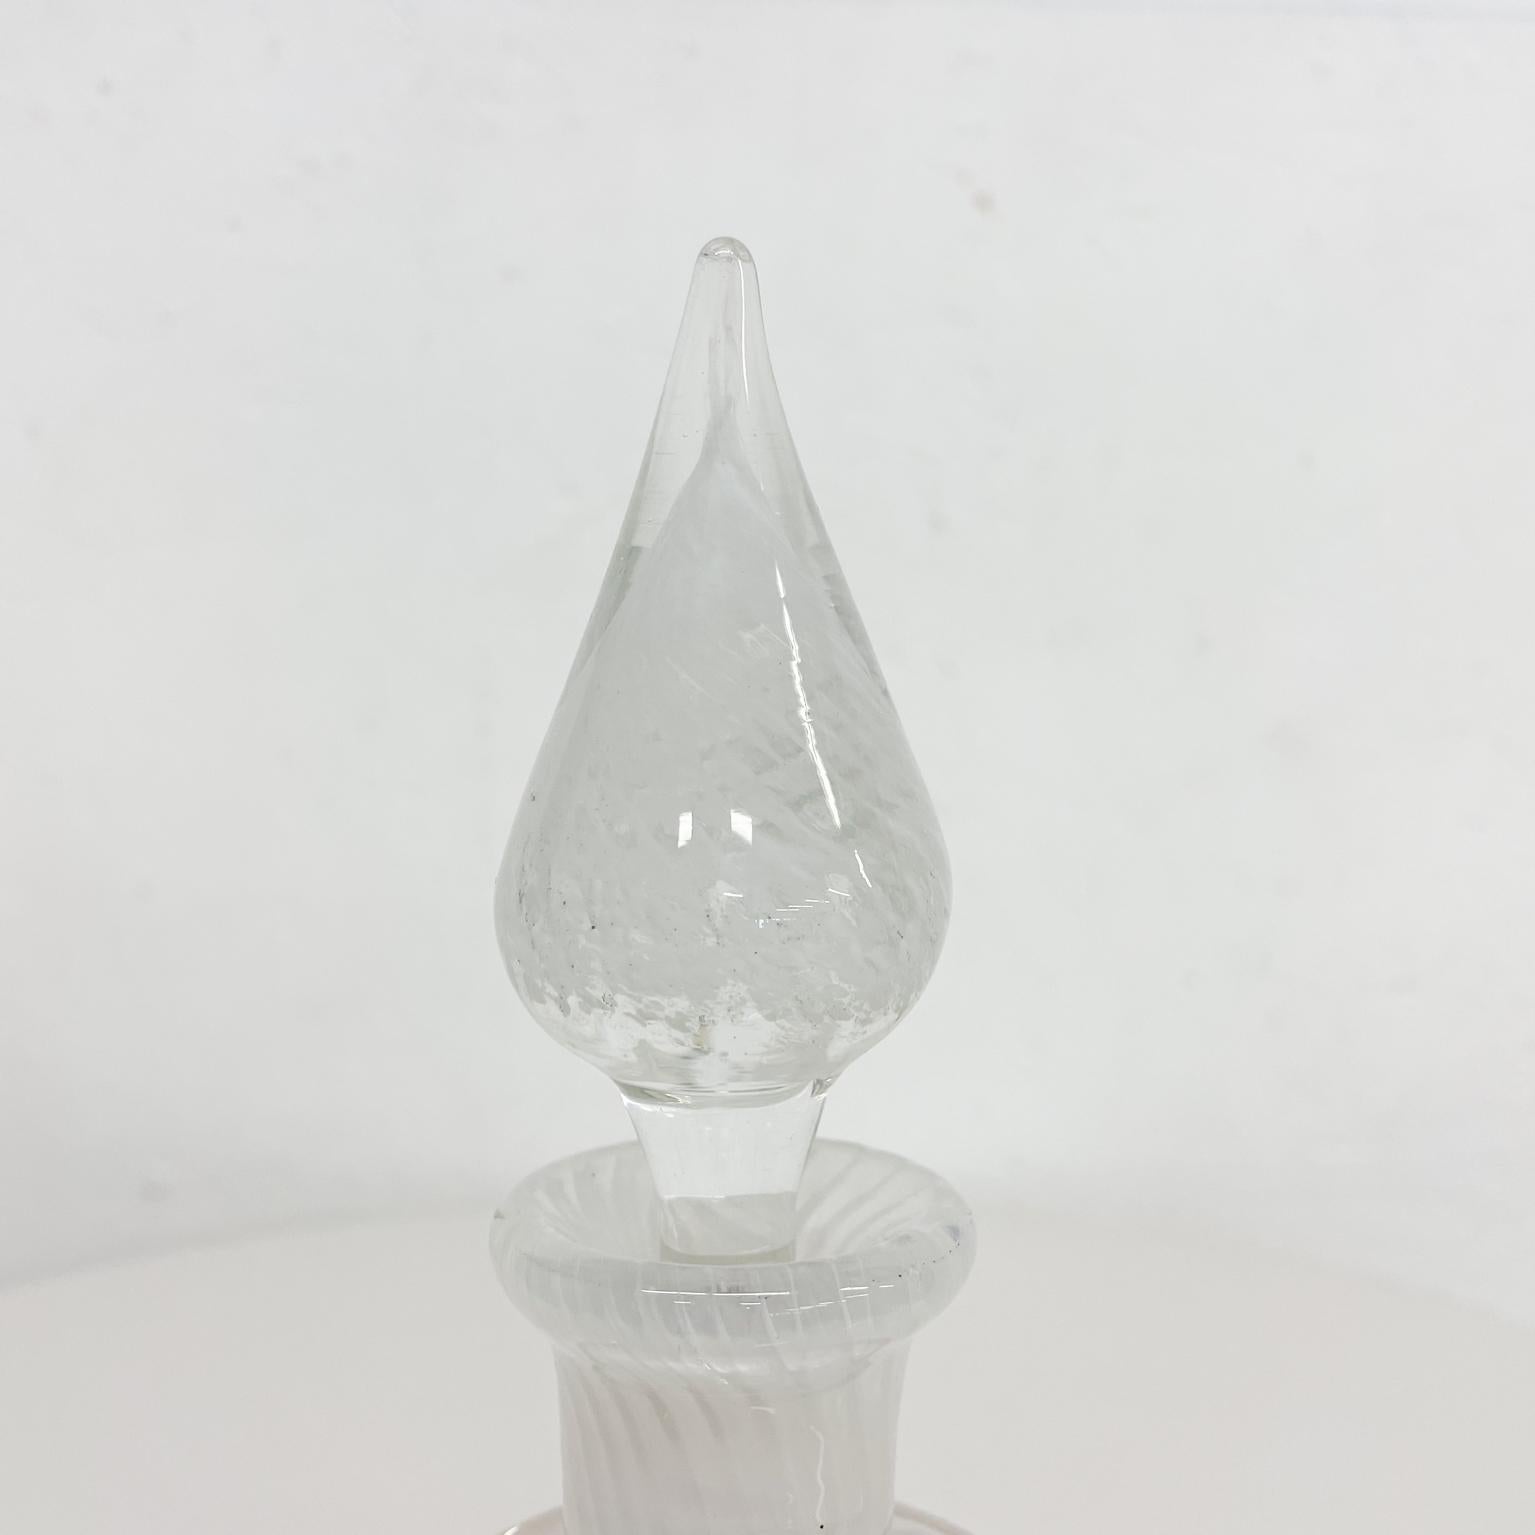 Italian Lovely Murano Swirled White Art Glass Perfume Bottle with Stopper Italy